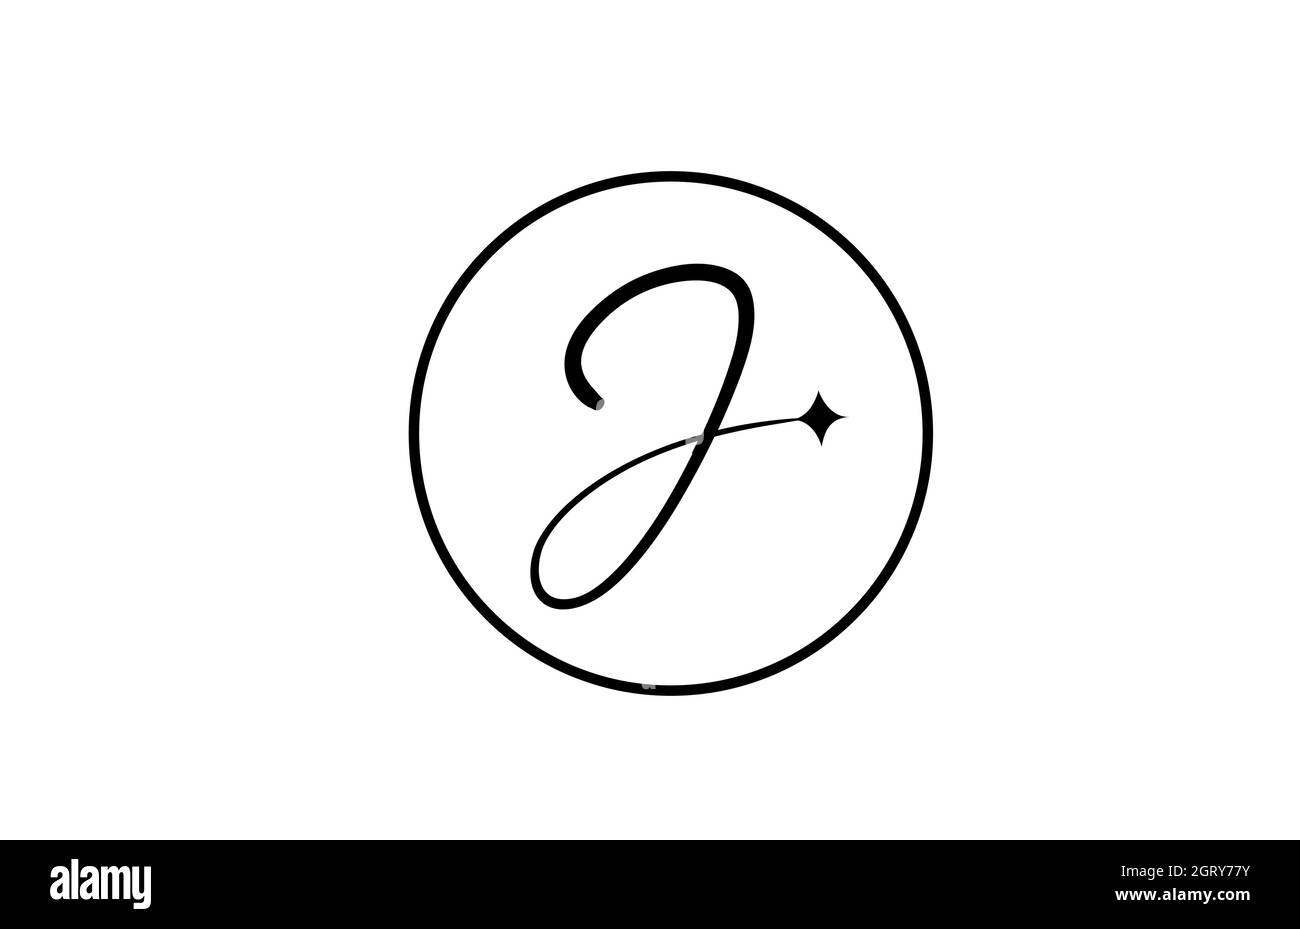 Logo lettera J per aziende con stella e cerchio. Lettere semplici ed eleganti per l'azienda. Logo di identità aziendale icona di branding in bianco e nero Illustrazione Vettoriale